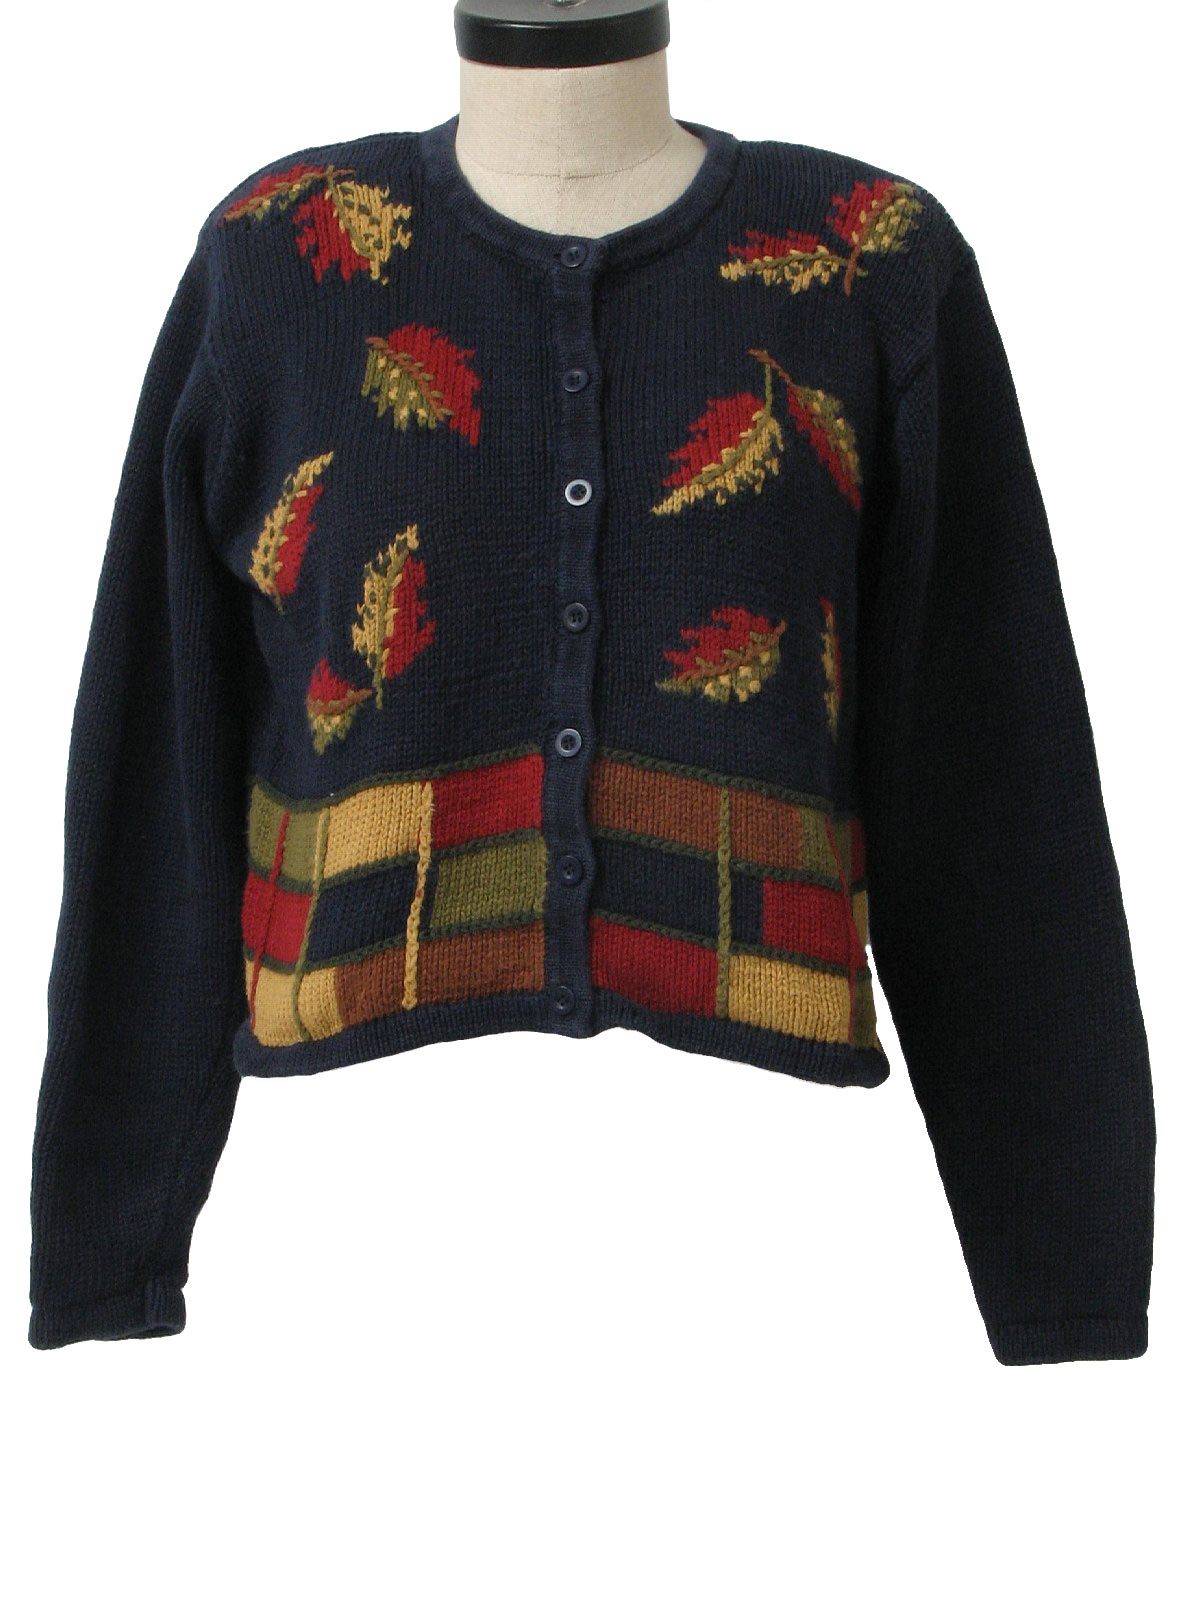 Paul Harris Design 90's Vintage Sweater: 90s or newer -Paul Harris ...